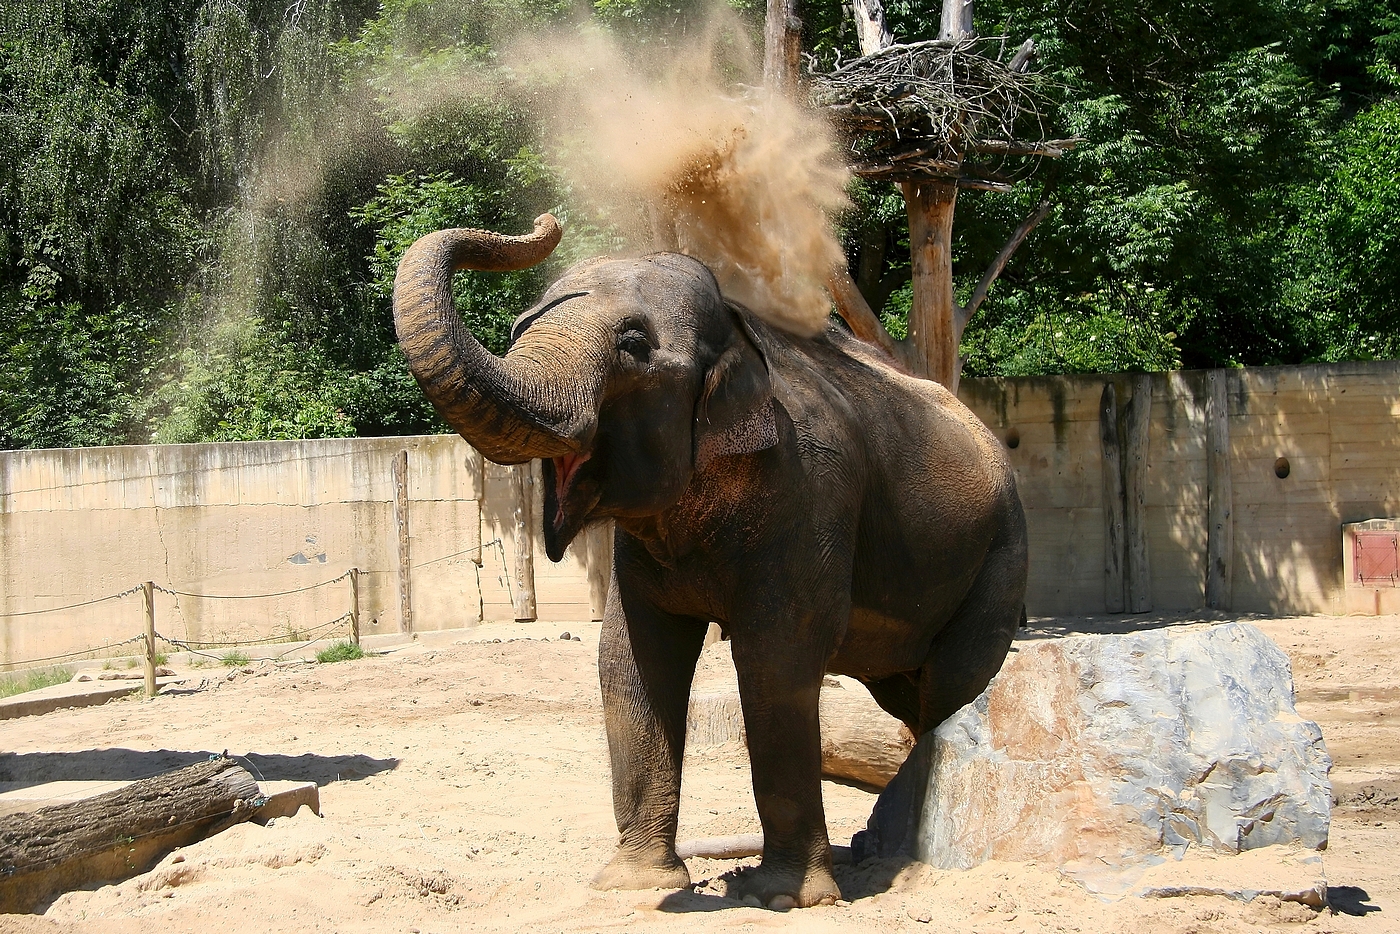 Slon dovádí